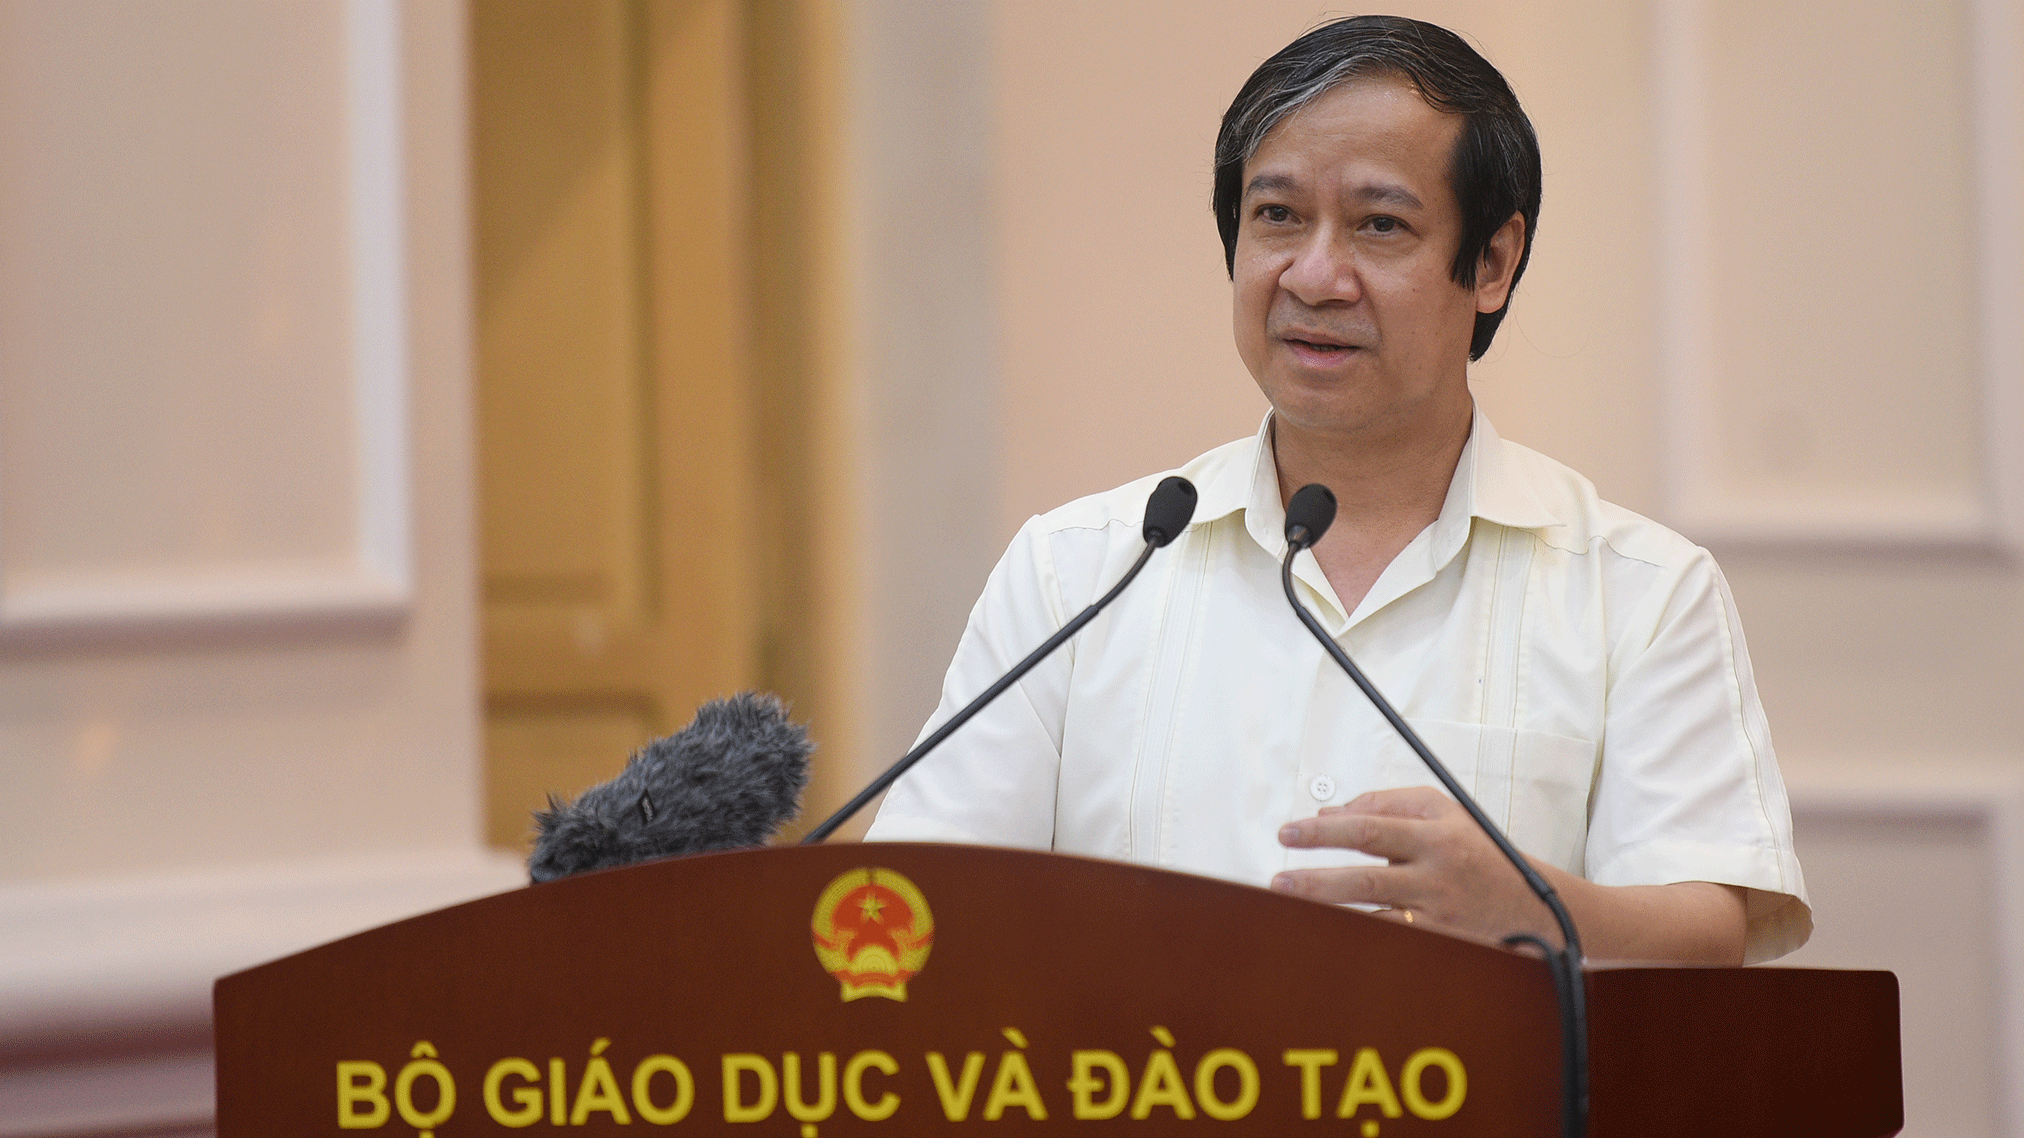 Bộ trưởng GD&ĐT Nguyễn Kim Sơn lần đầu trả lời chất vấn Quốc hội